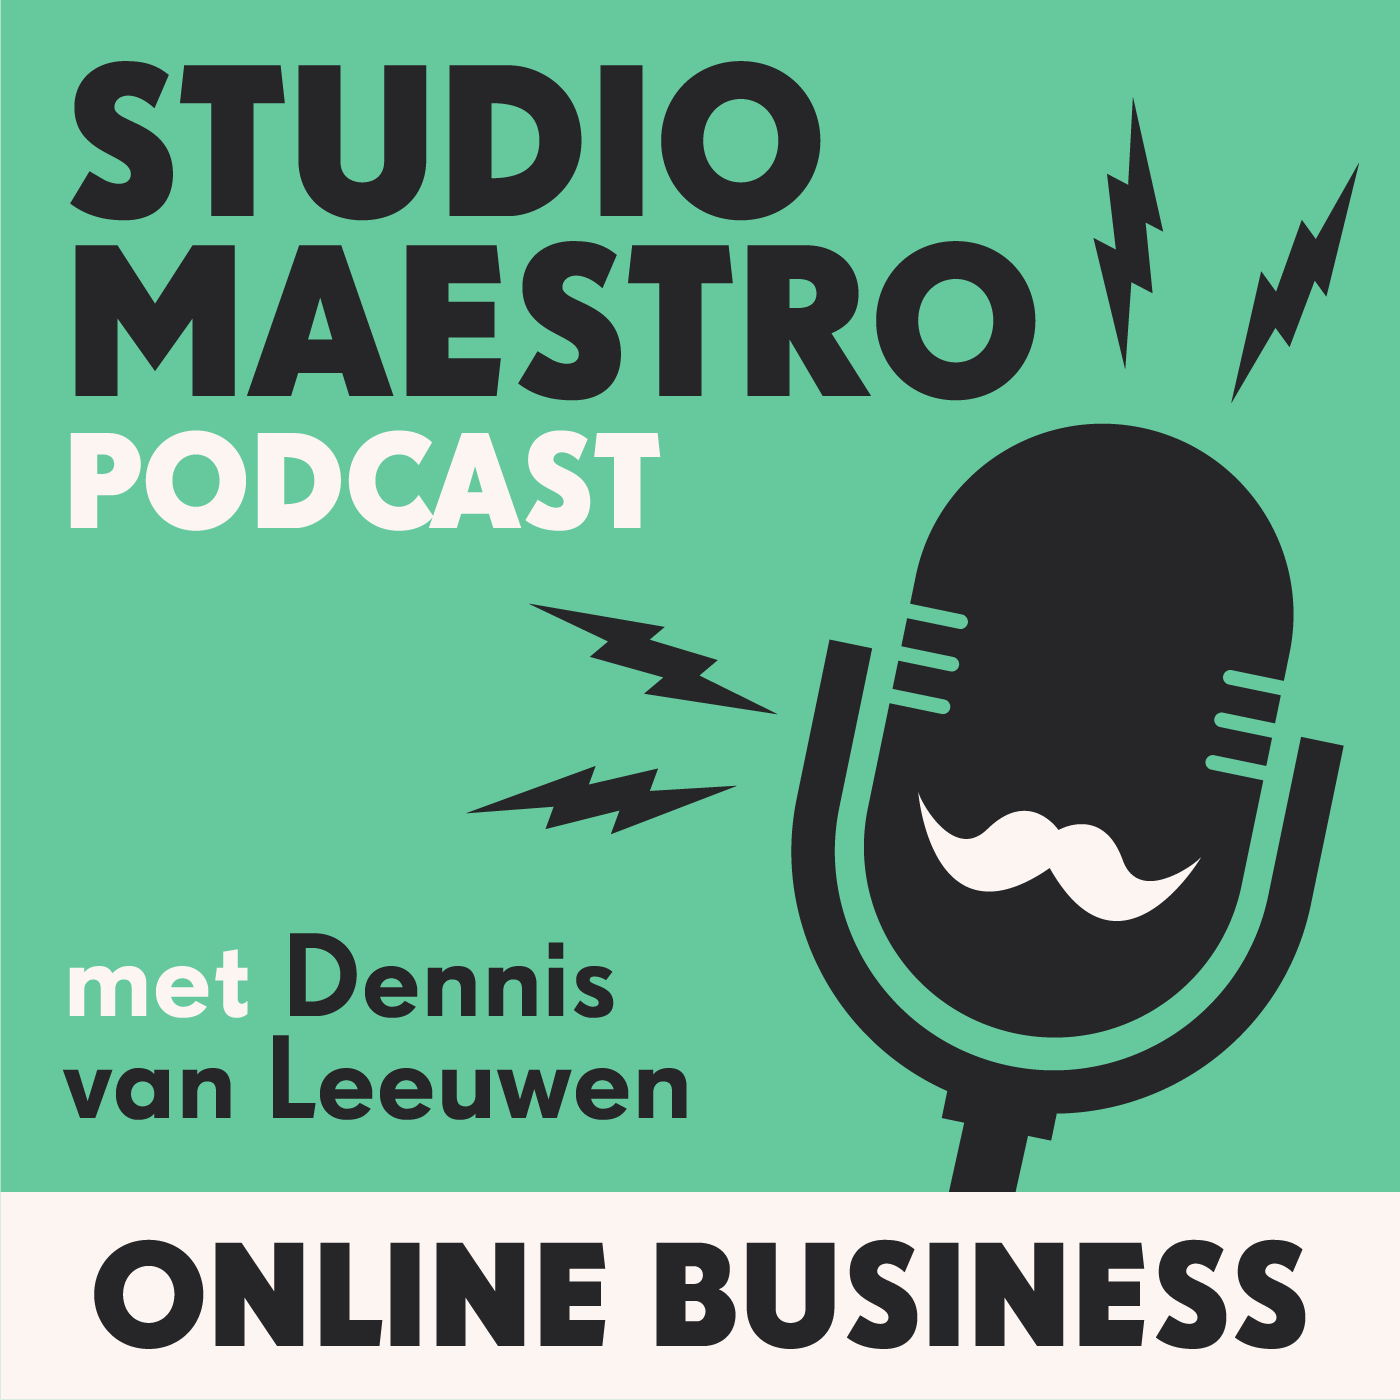 In de 20e aflevering praat ik met Martijn van der Tuin. Martijn is actief ondernemer sinds 2006, het jaar waar hij een aantal bedrijven heeft opgericht die hij in 2010 weer heeft verkocht. Sinds 2011 is hij actief als coach,